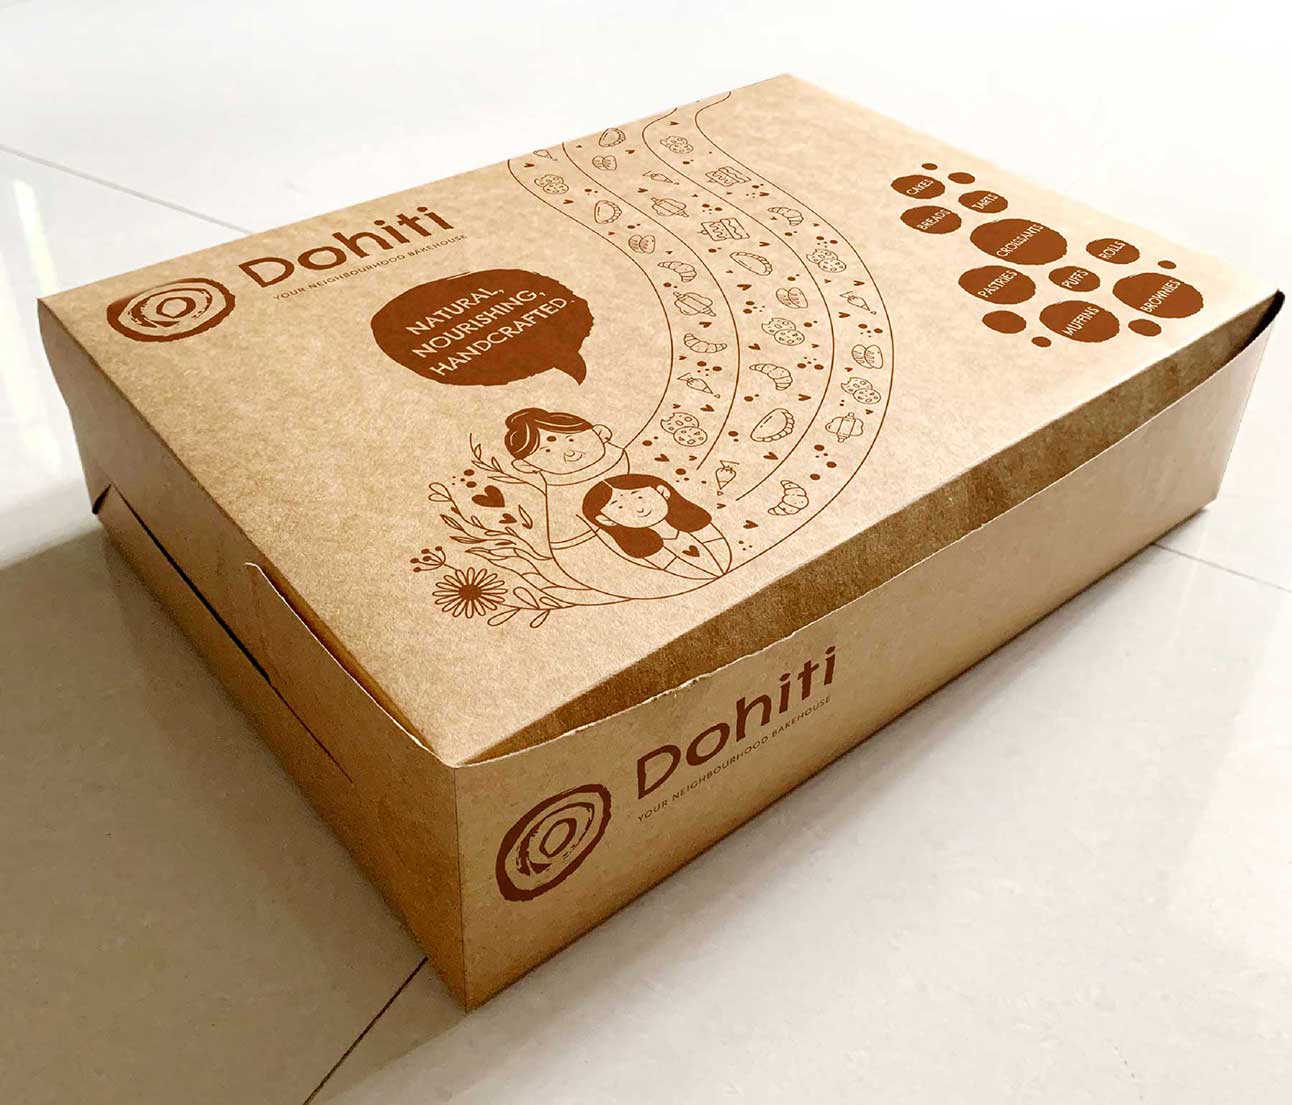 Packaging design for Dohiti Bake House